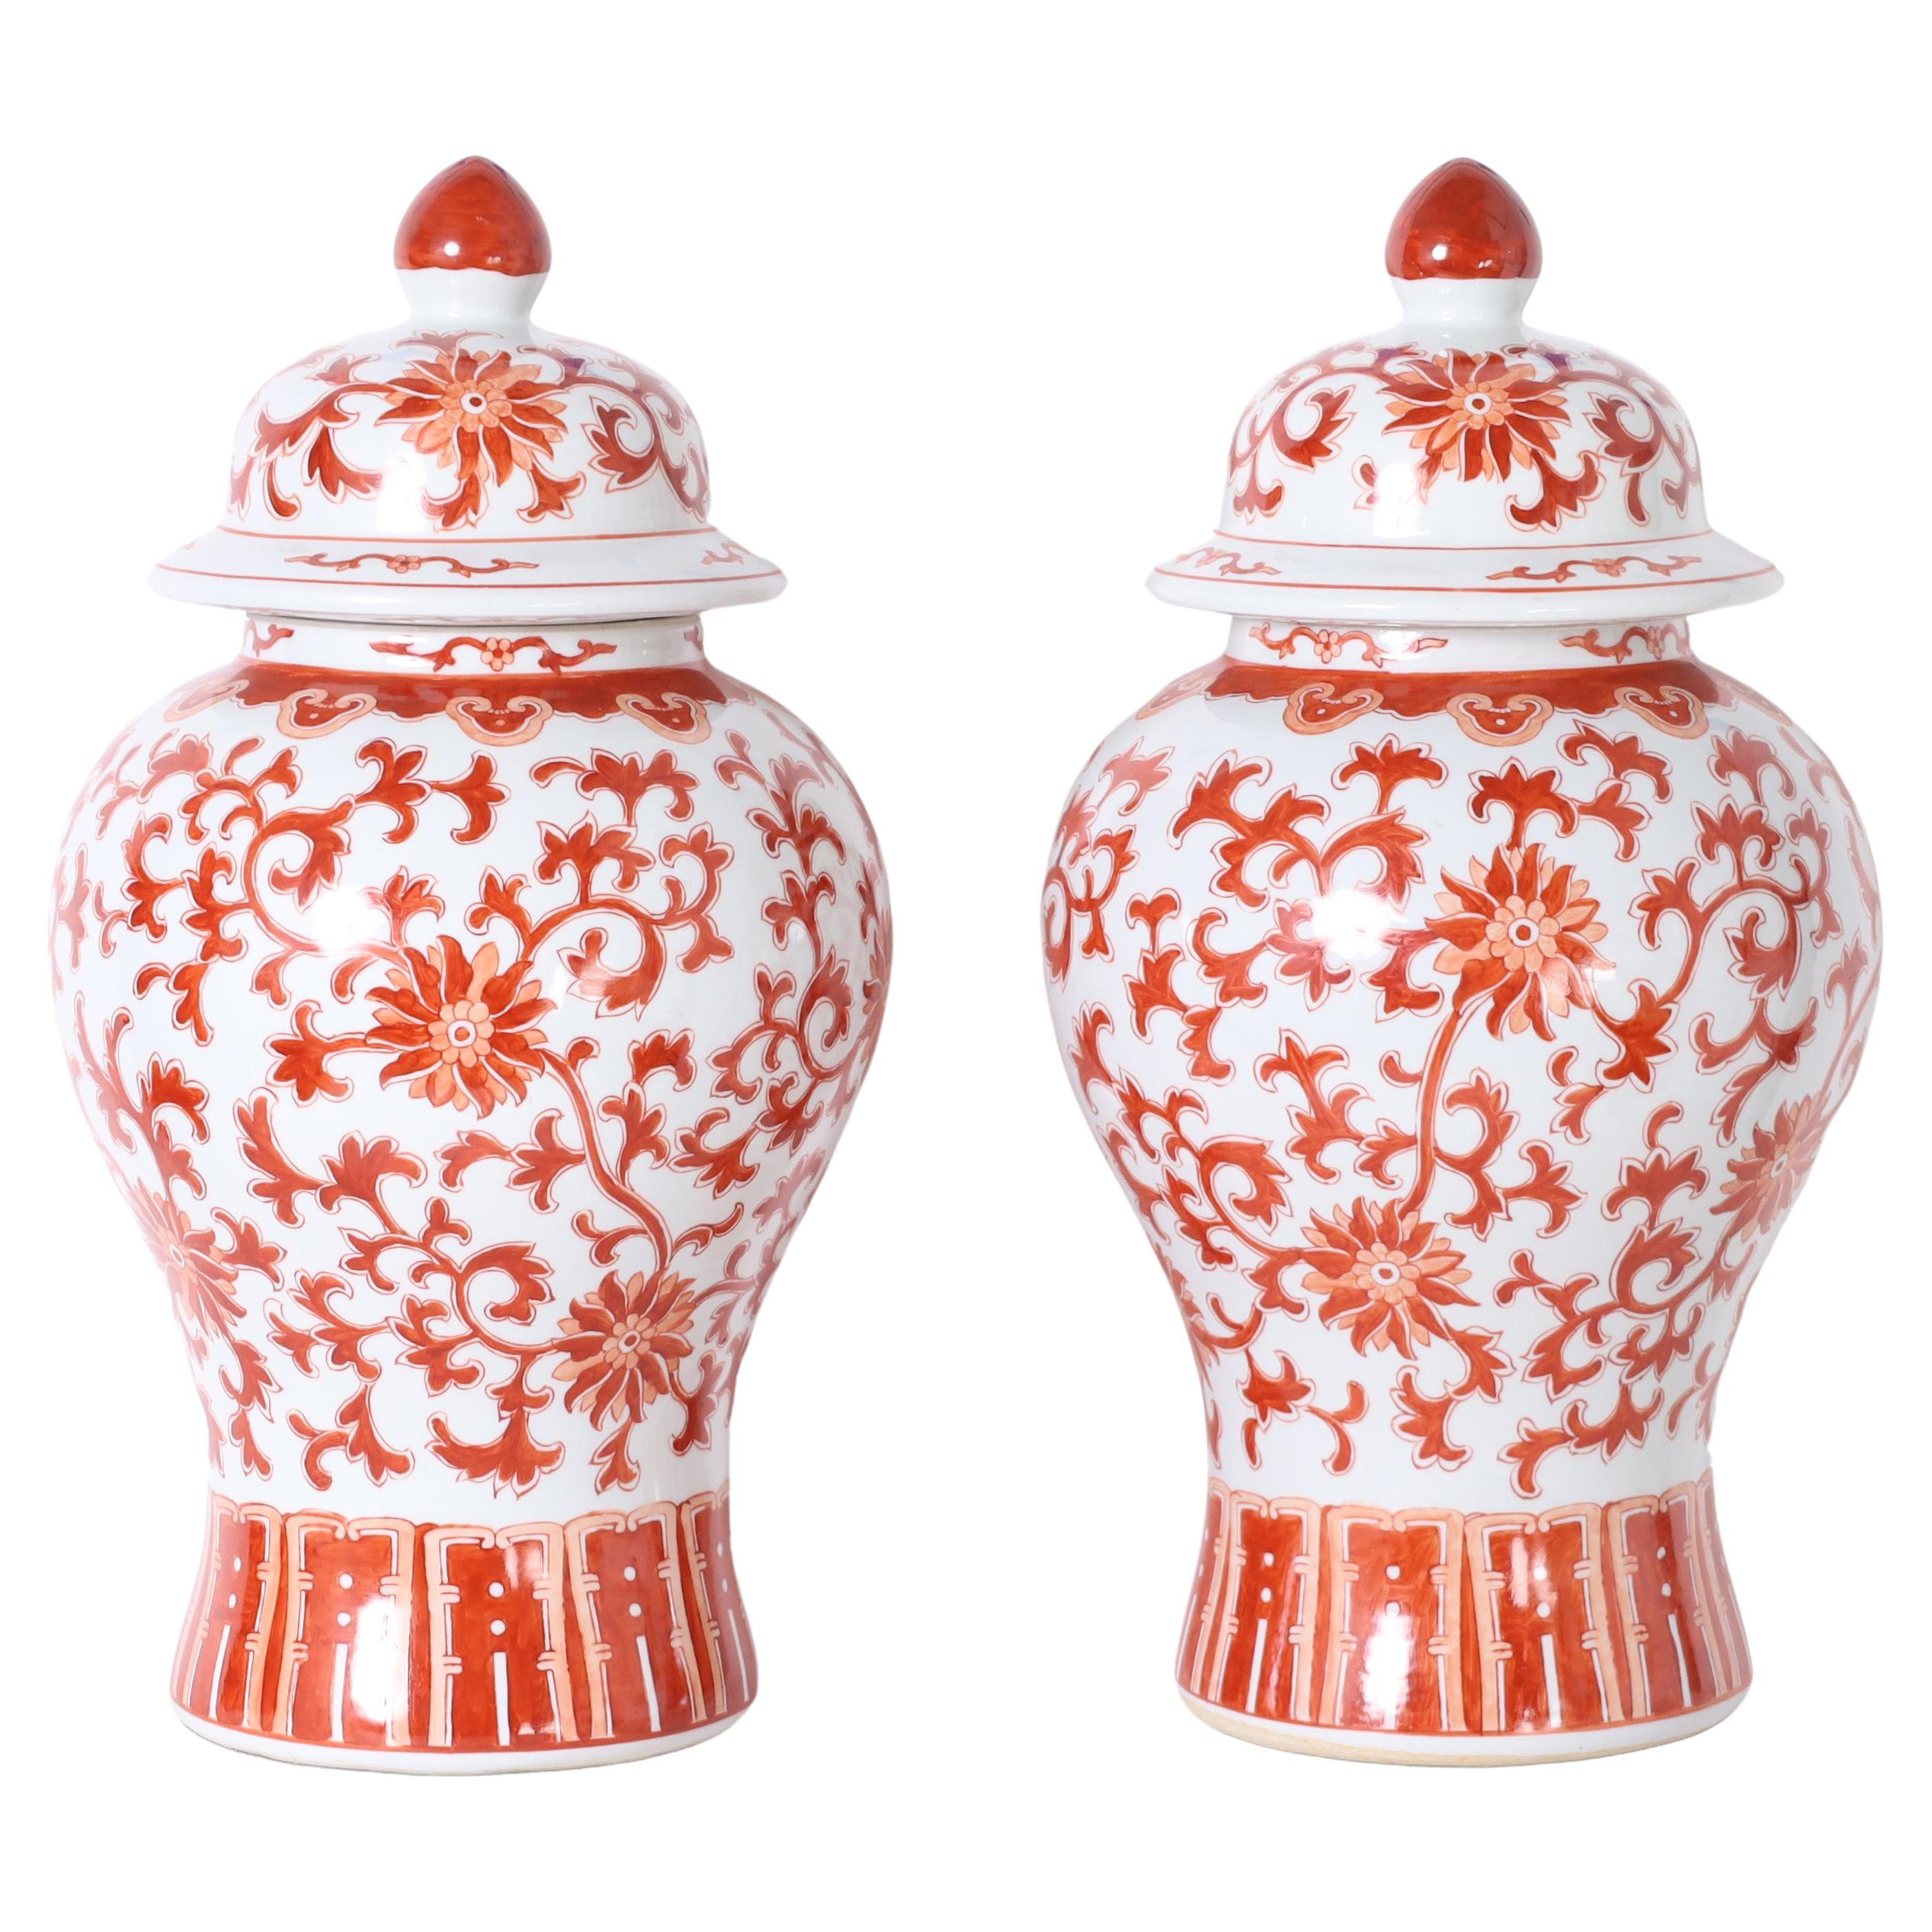 Paar rote und weiße Porzellanurnen oder -gefäße mit Deckeln